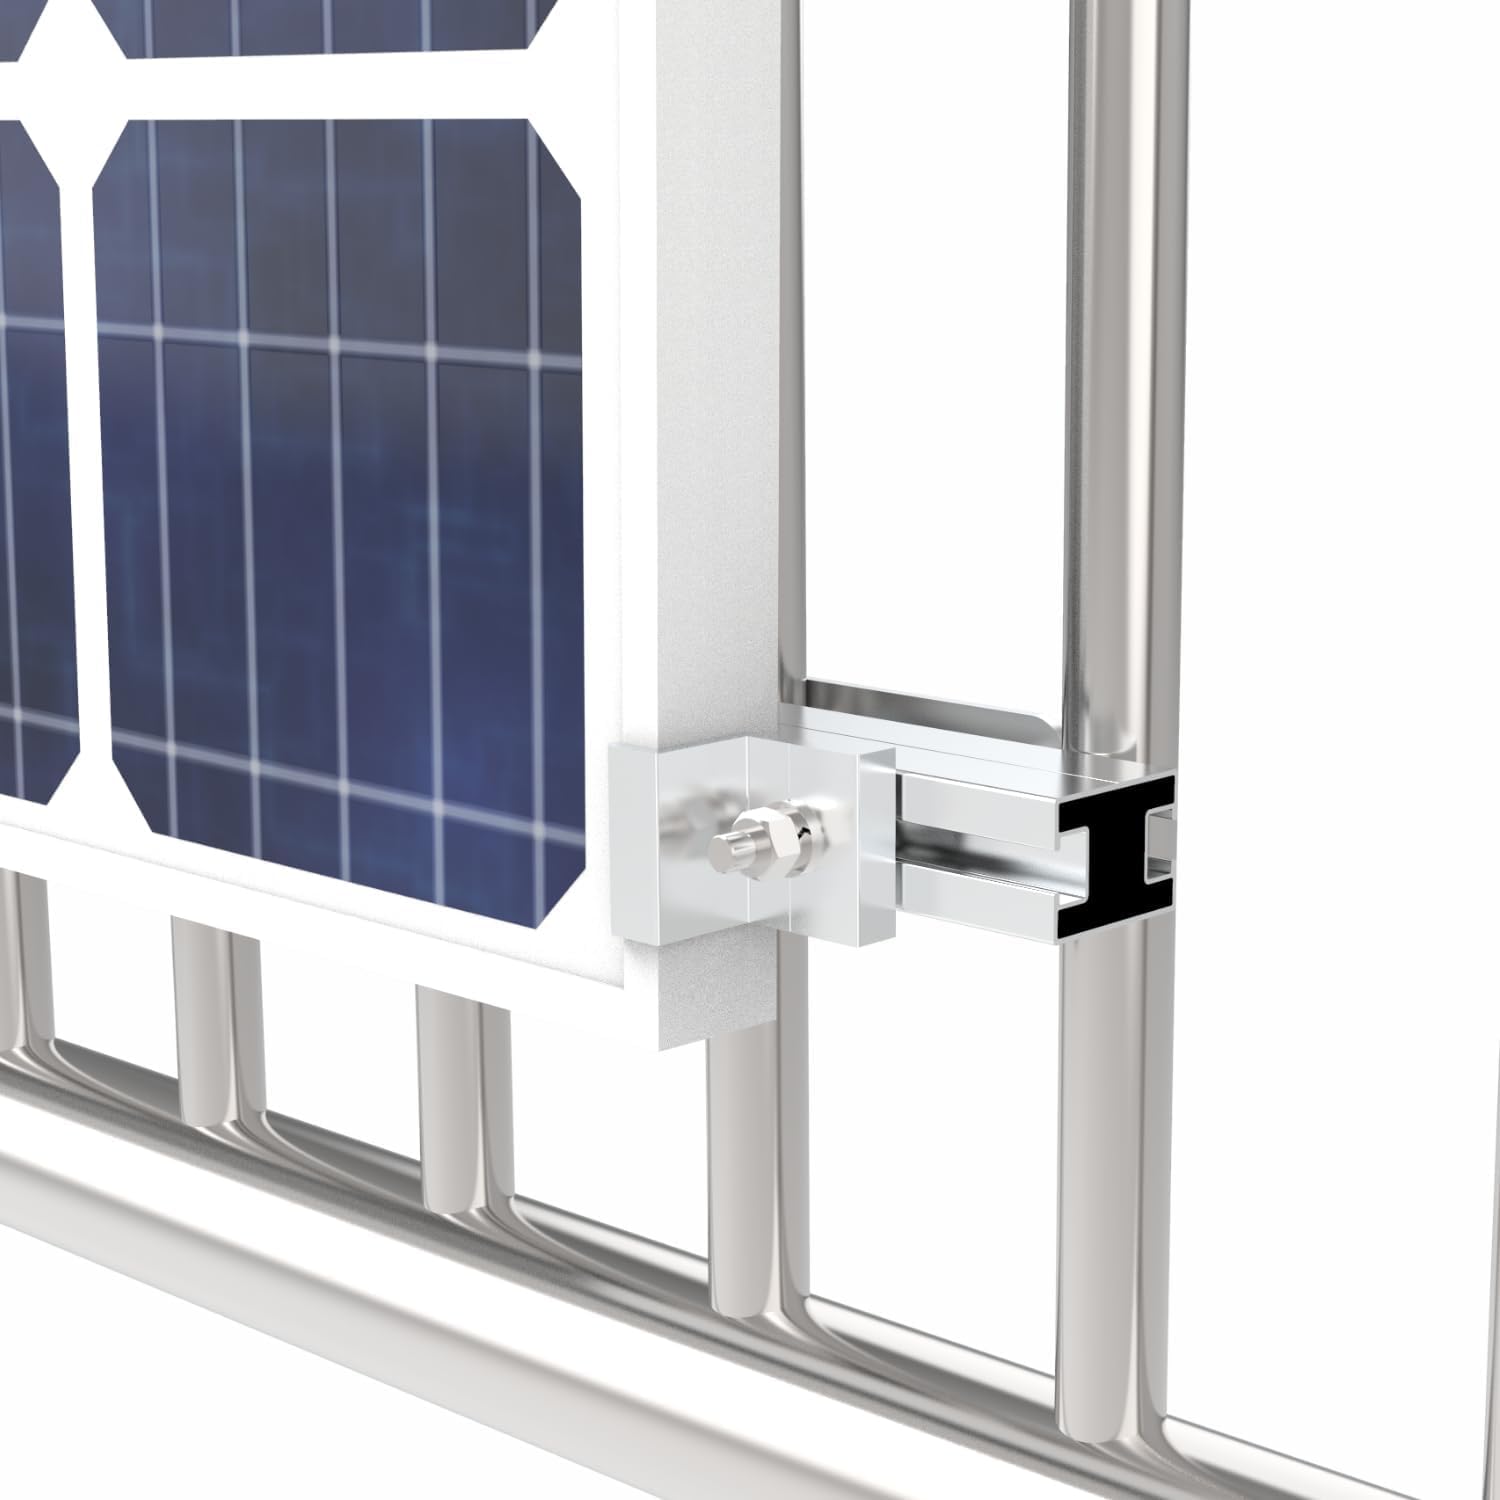 Einfache Balkonkraftwerk Solarmodule Halterung für runde Geländer mit Gummischutz, Befestigung für Solarpanele Photovoltaik am Balkongeländer | Montagset für PV-Module| Neigungswinkel 0° & 15-30°